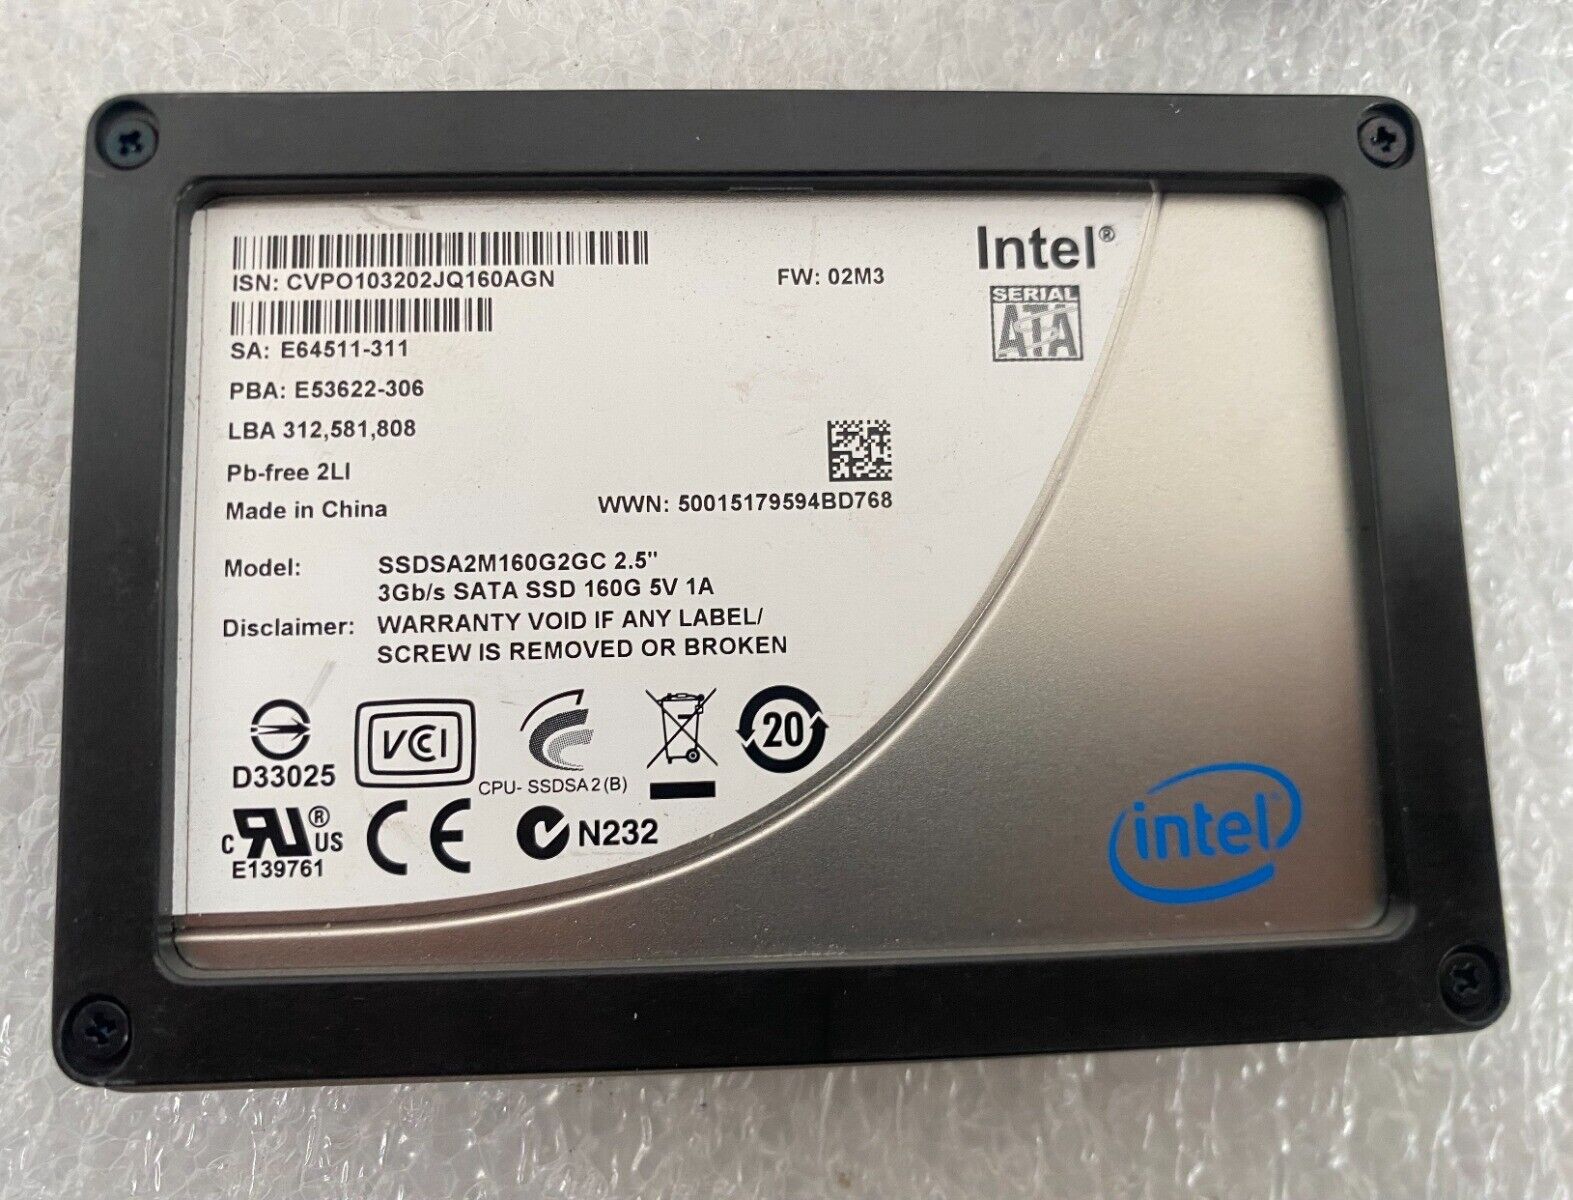 Intel X25-M 160GB SATA 3Gb/s SSDSA2M160G2GC 2.5